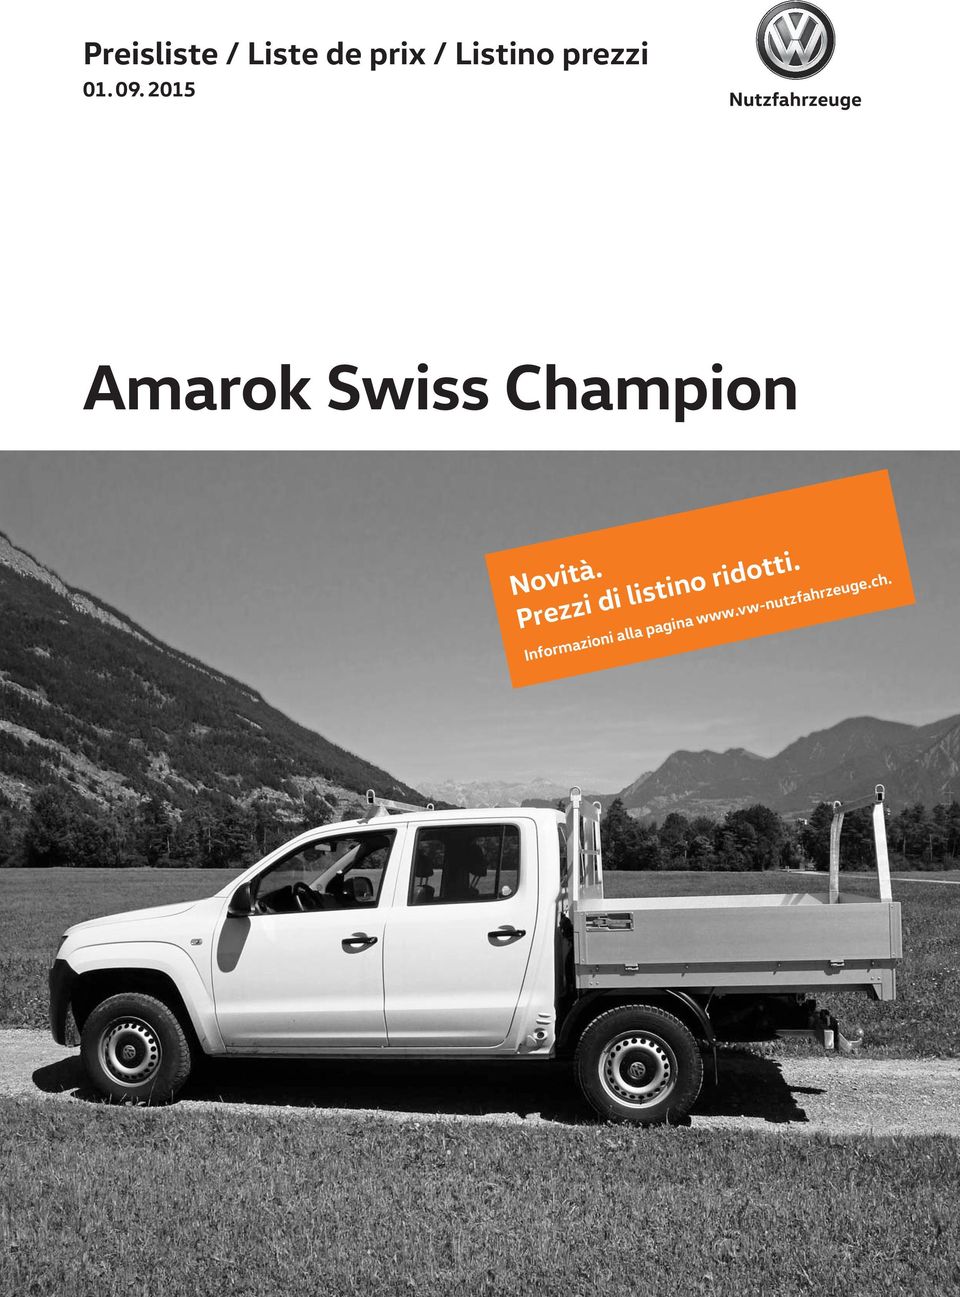 2015 Amarok Swiss Champion Novità.